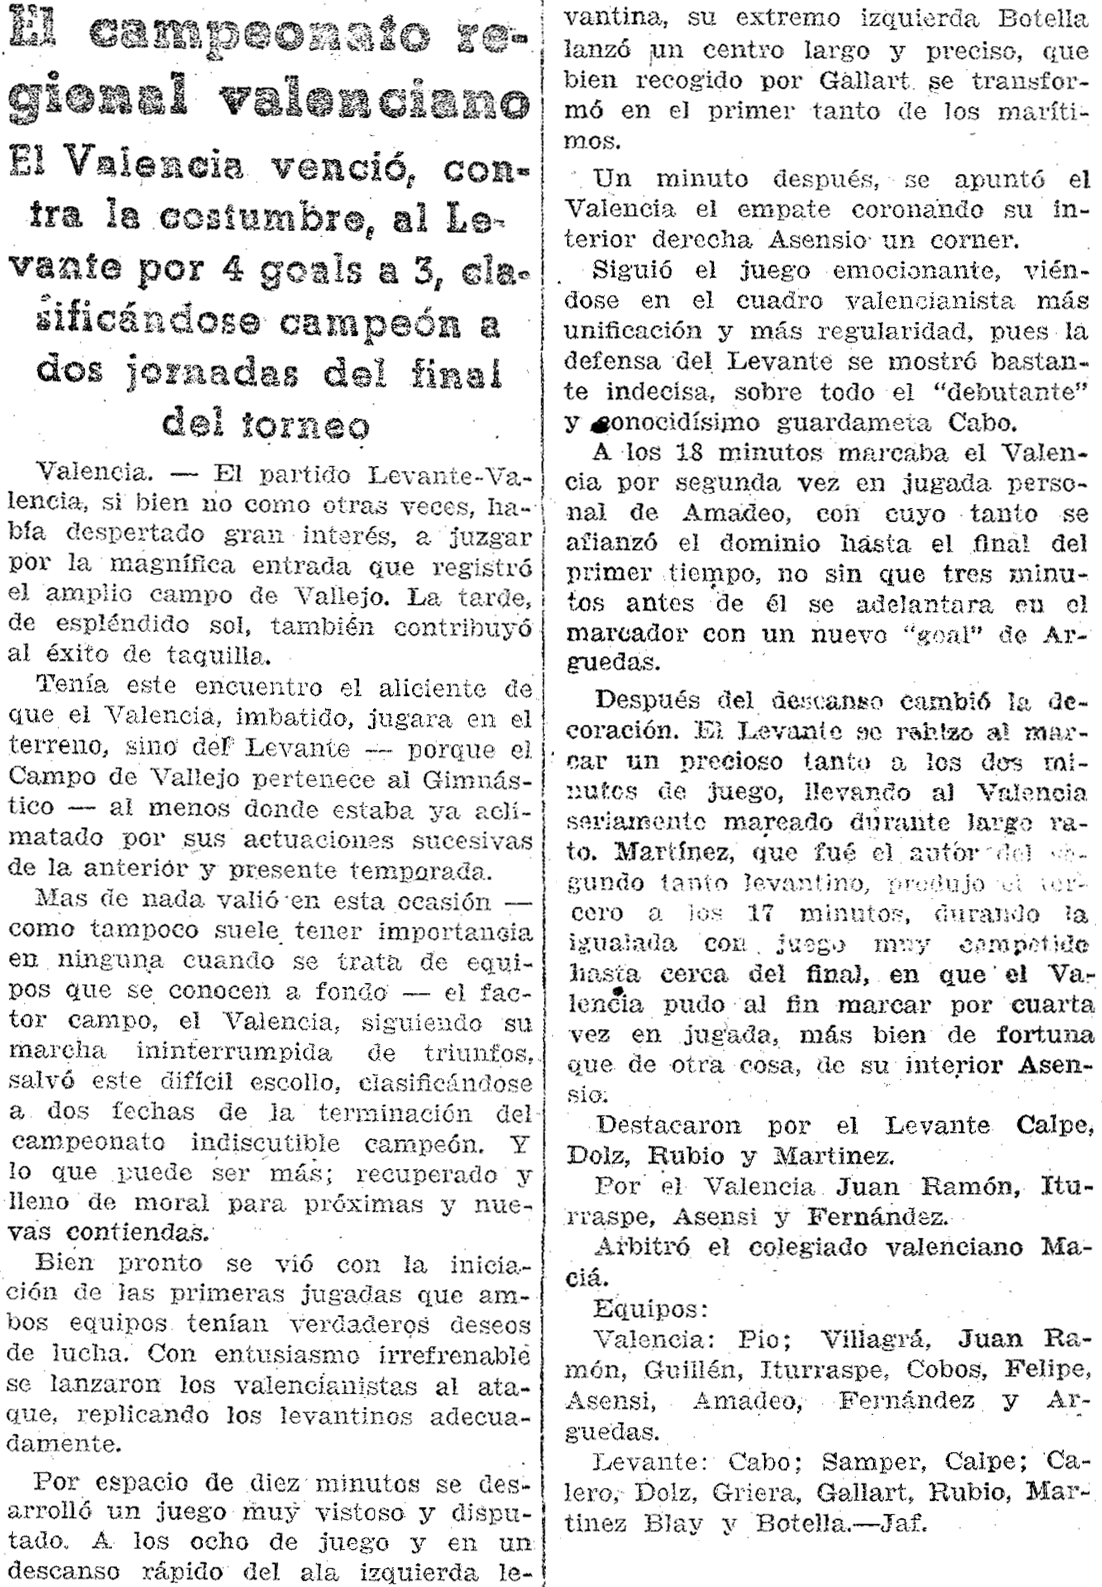 1937.11.28 (28 ноября 1937), Леванте - Валенсия, 3-4.png